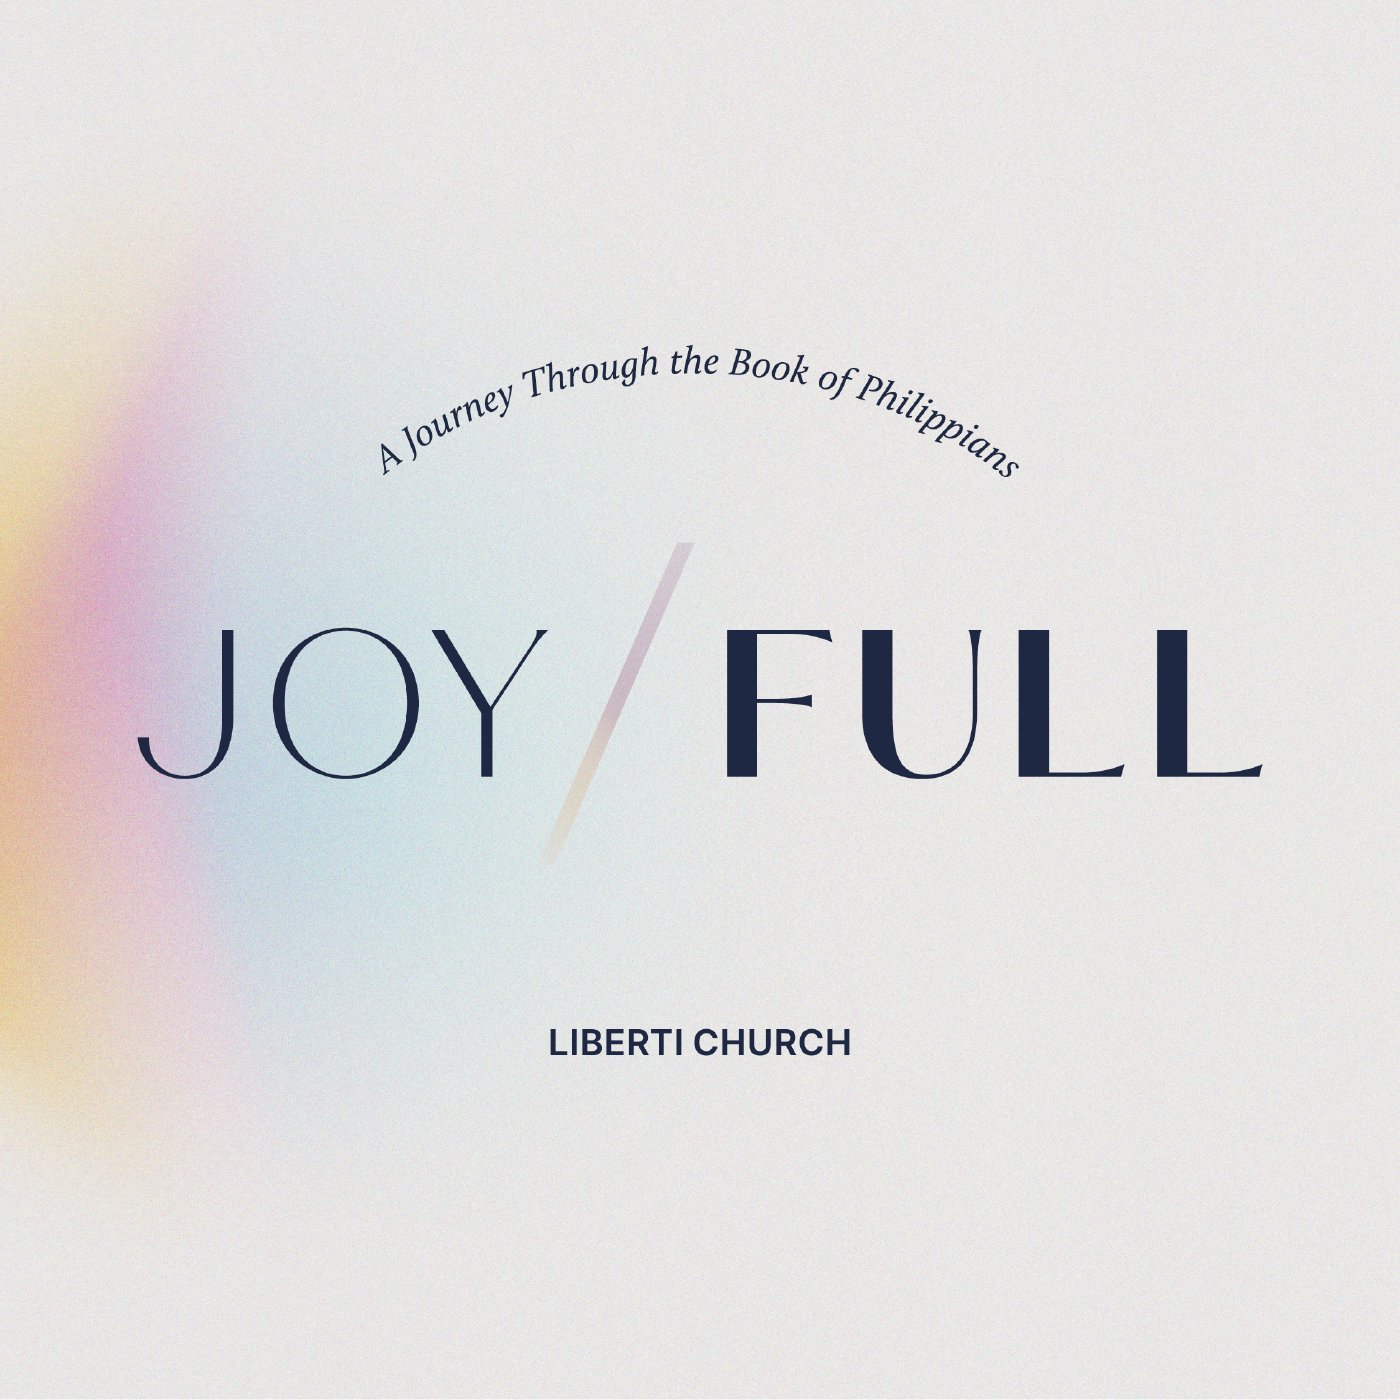 Joy/Full - Together and Unafraid - Week 4